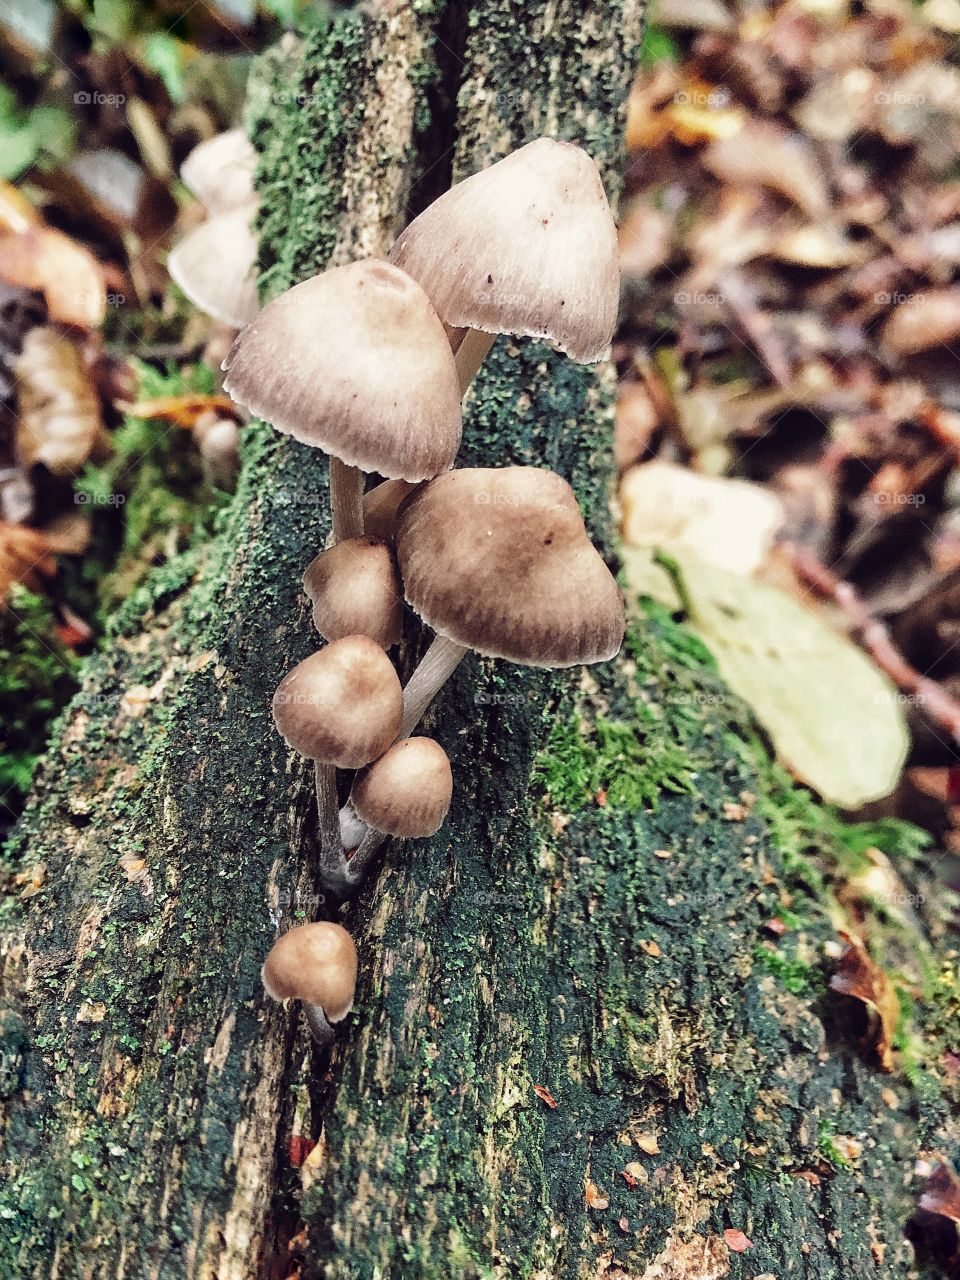 Fairy mushroom cluster 